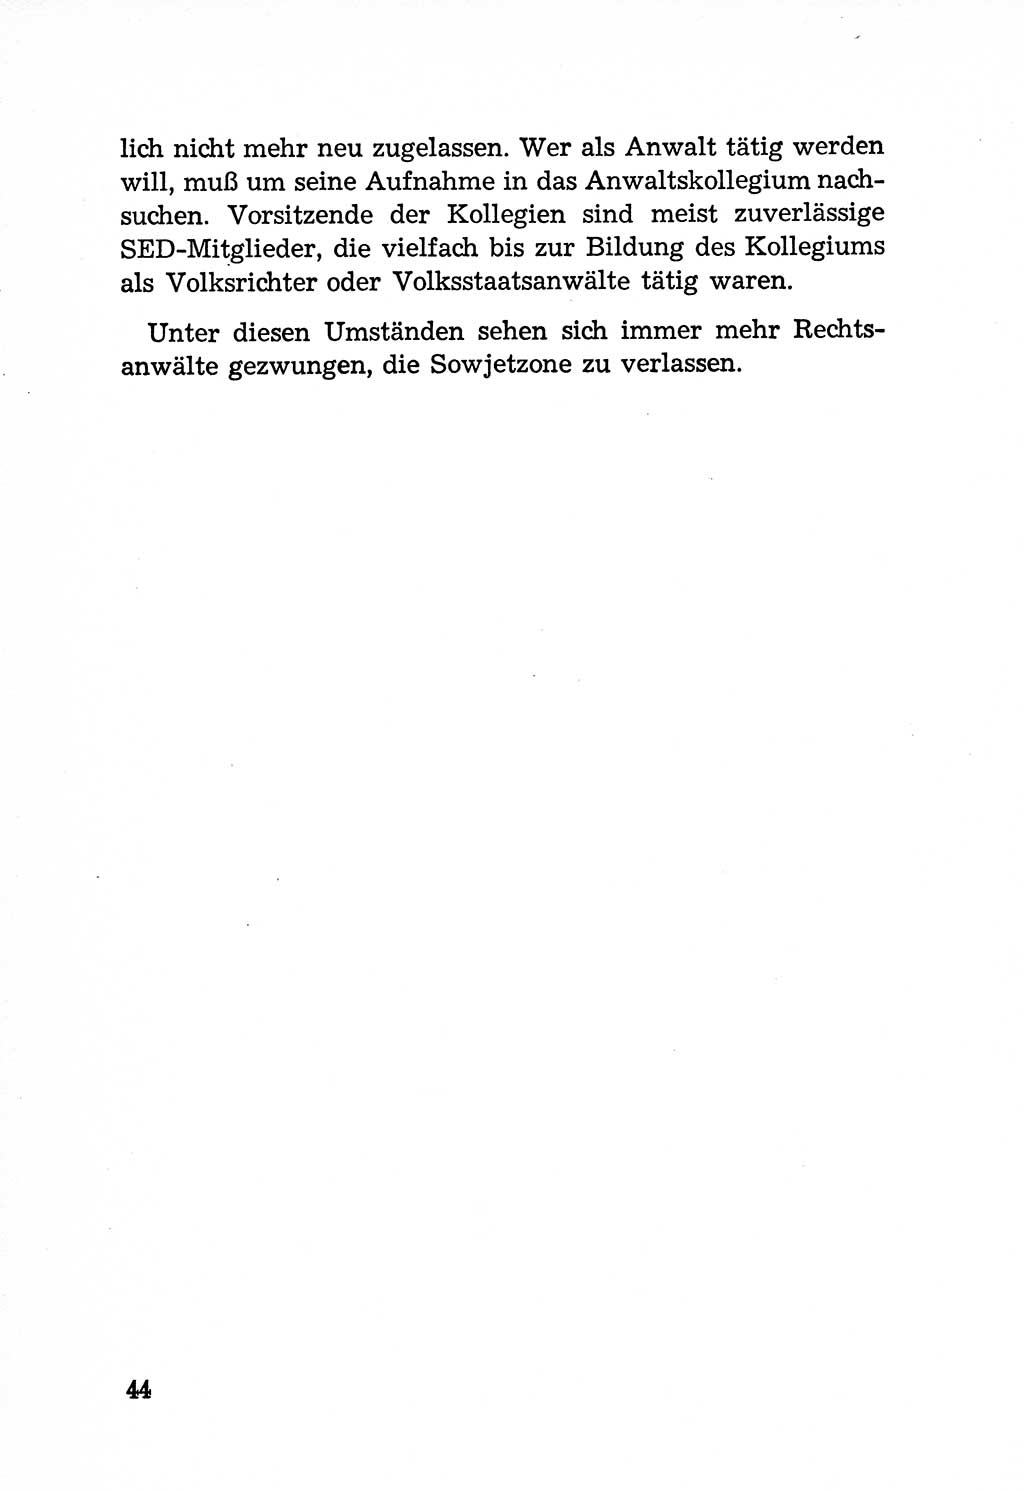 Rechtsstaat in zweierlei Hinsicht, Untersuchungsausschuß freiheitlicher Juristen (UfJ) [Bundesrepublik Deutschland (BRD)] 1956, Seite 44 (R.-St. UfJ BRD 1956, S. 44)